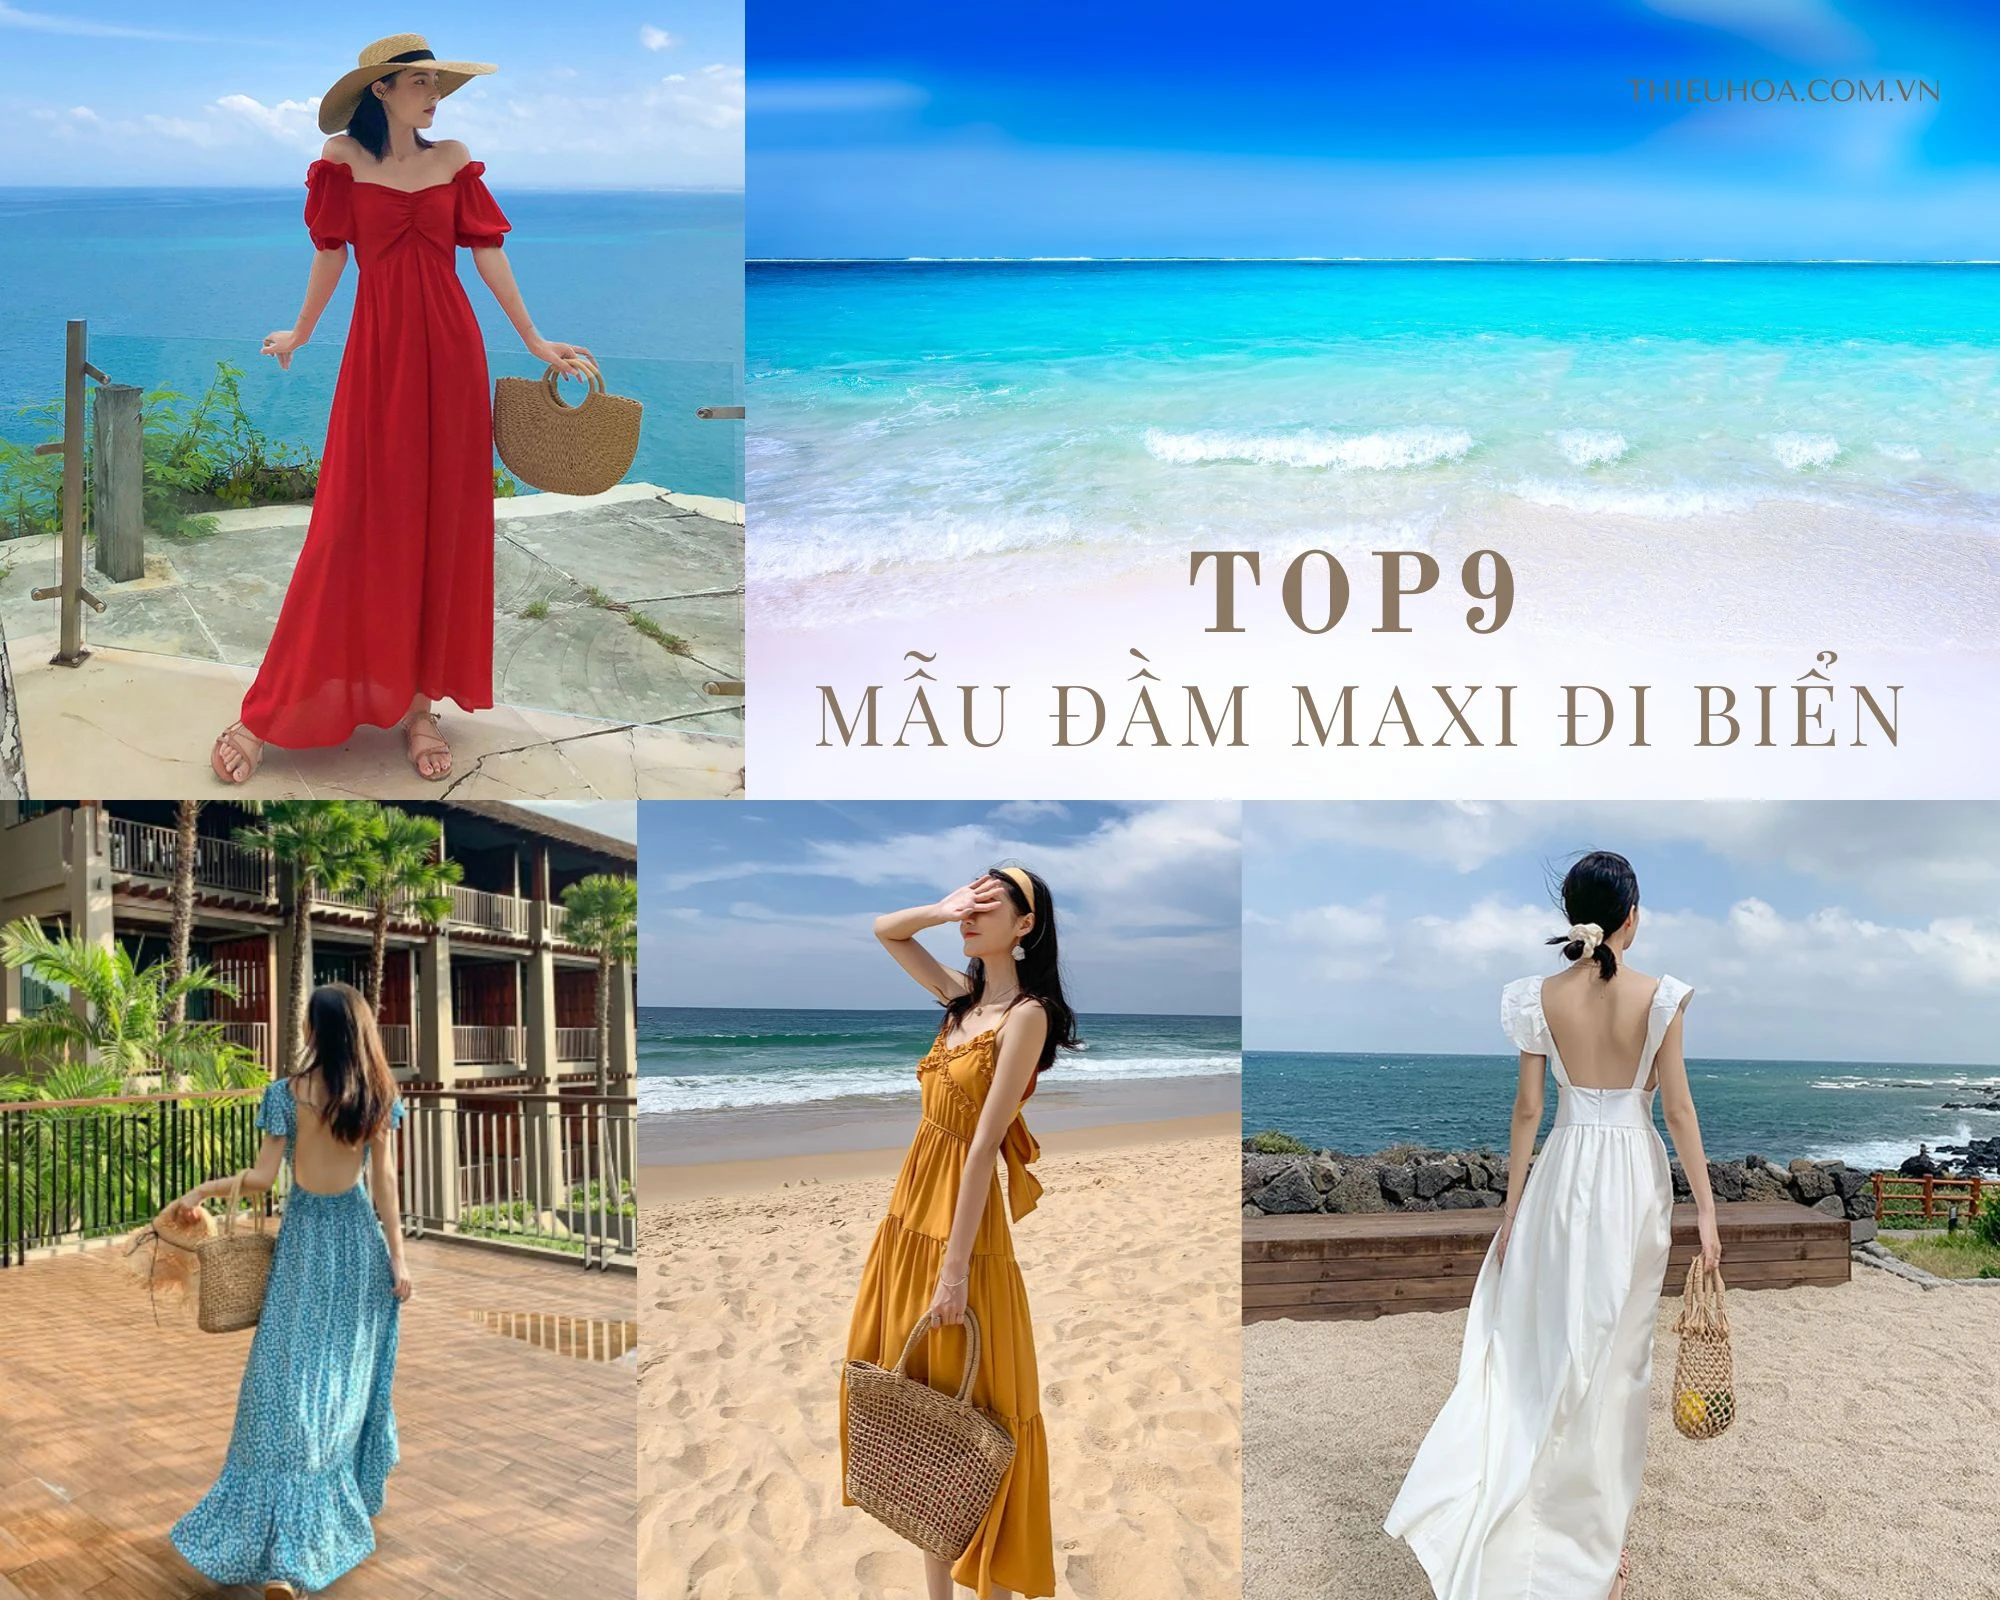 Top 11 mẫu đầm maxi đi biển đẹp dành cho tất cả các cô gái  Megatravel   Kênh thông tin đánh giá du lịch toàn quốc